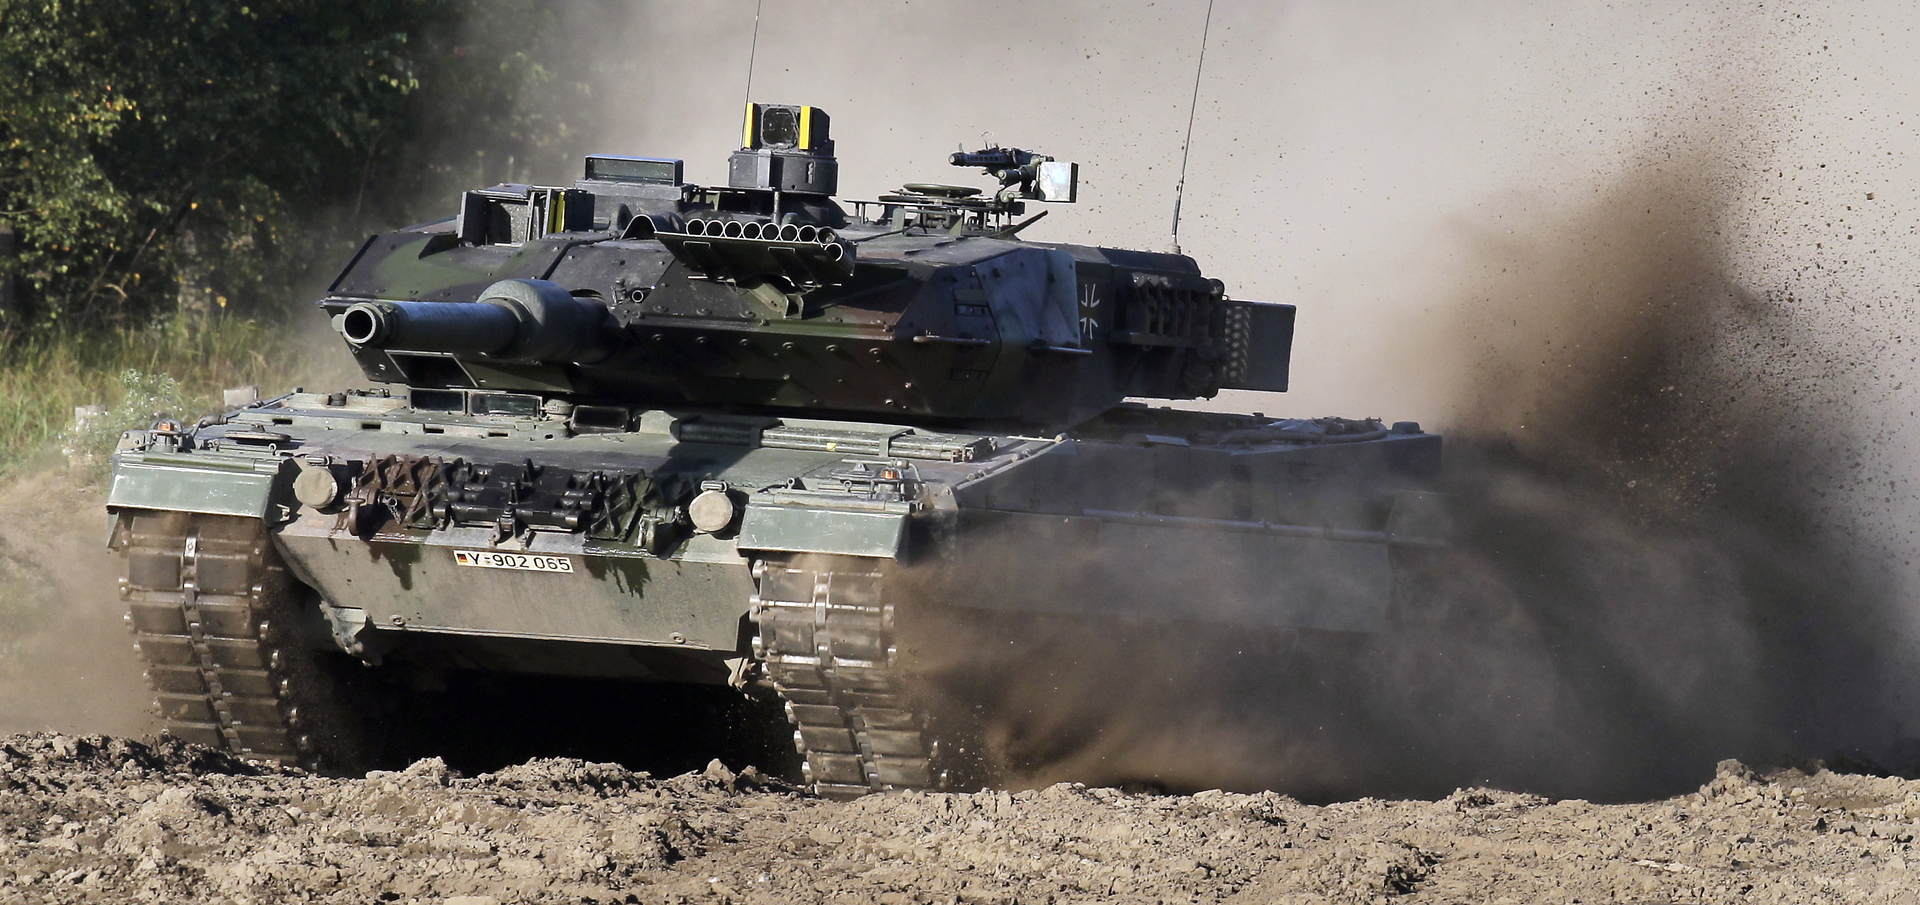 Parlamento Europeo insta a Alemania a entregar tanques Leopard a Ucrania